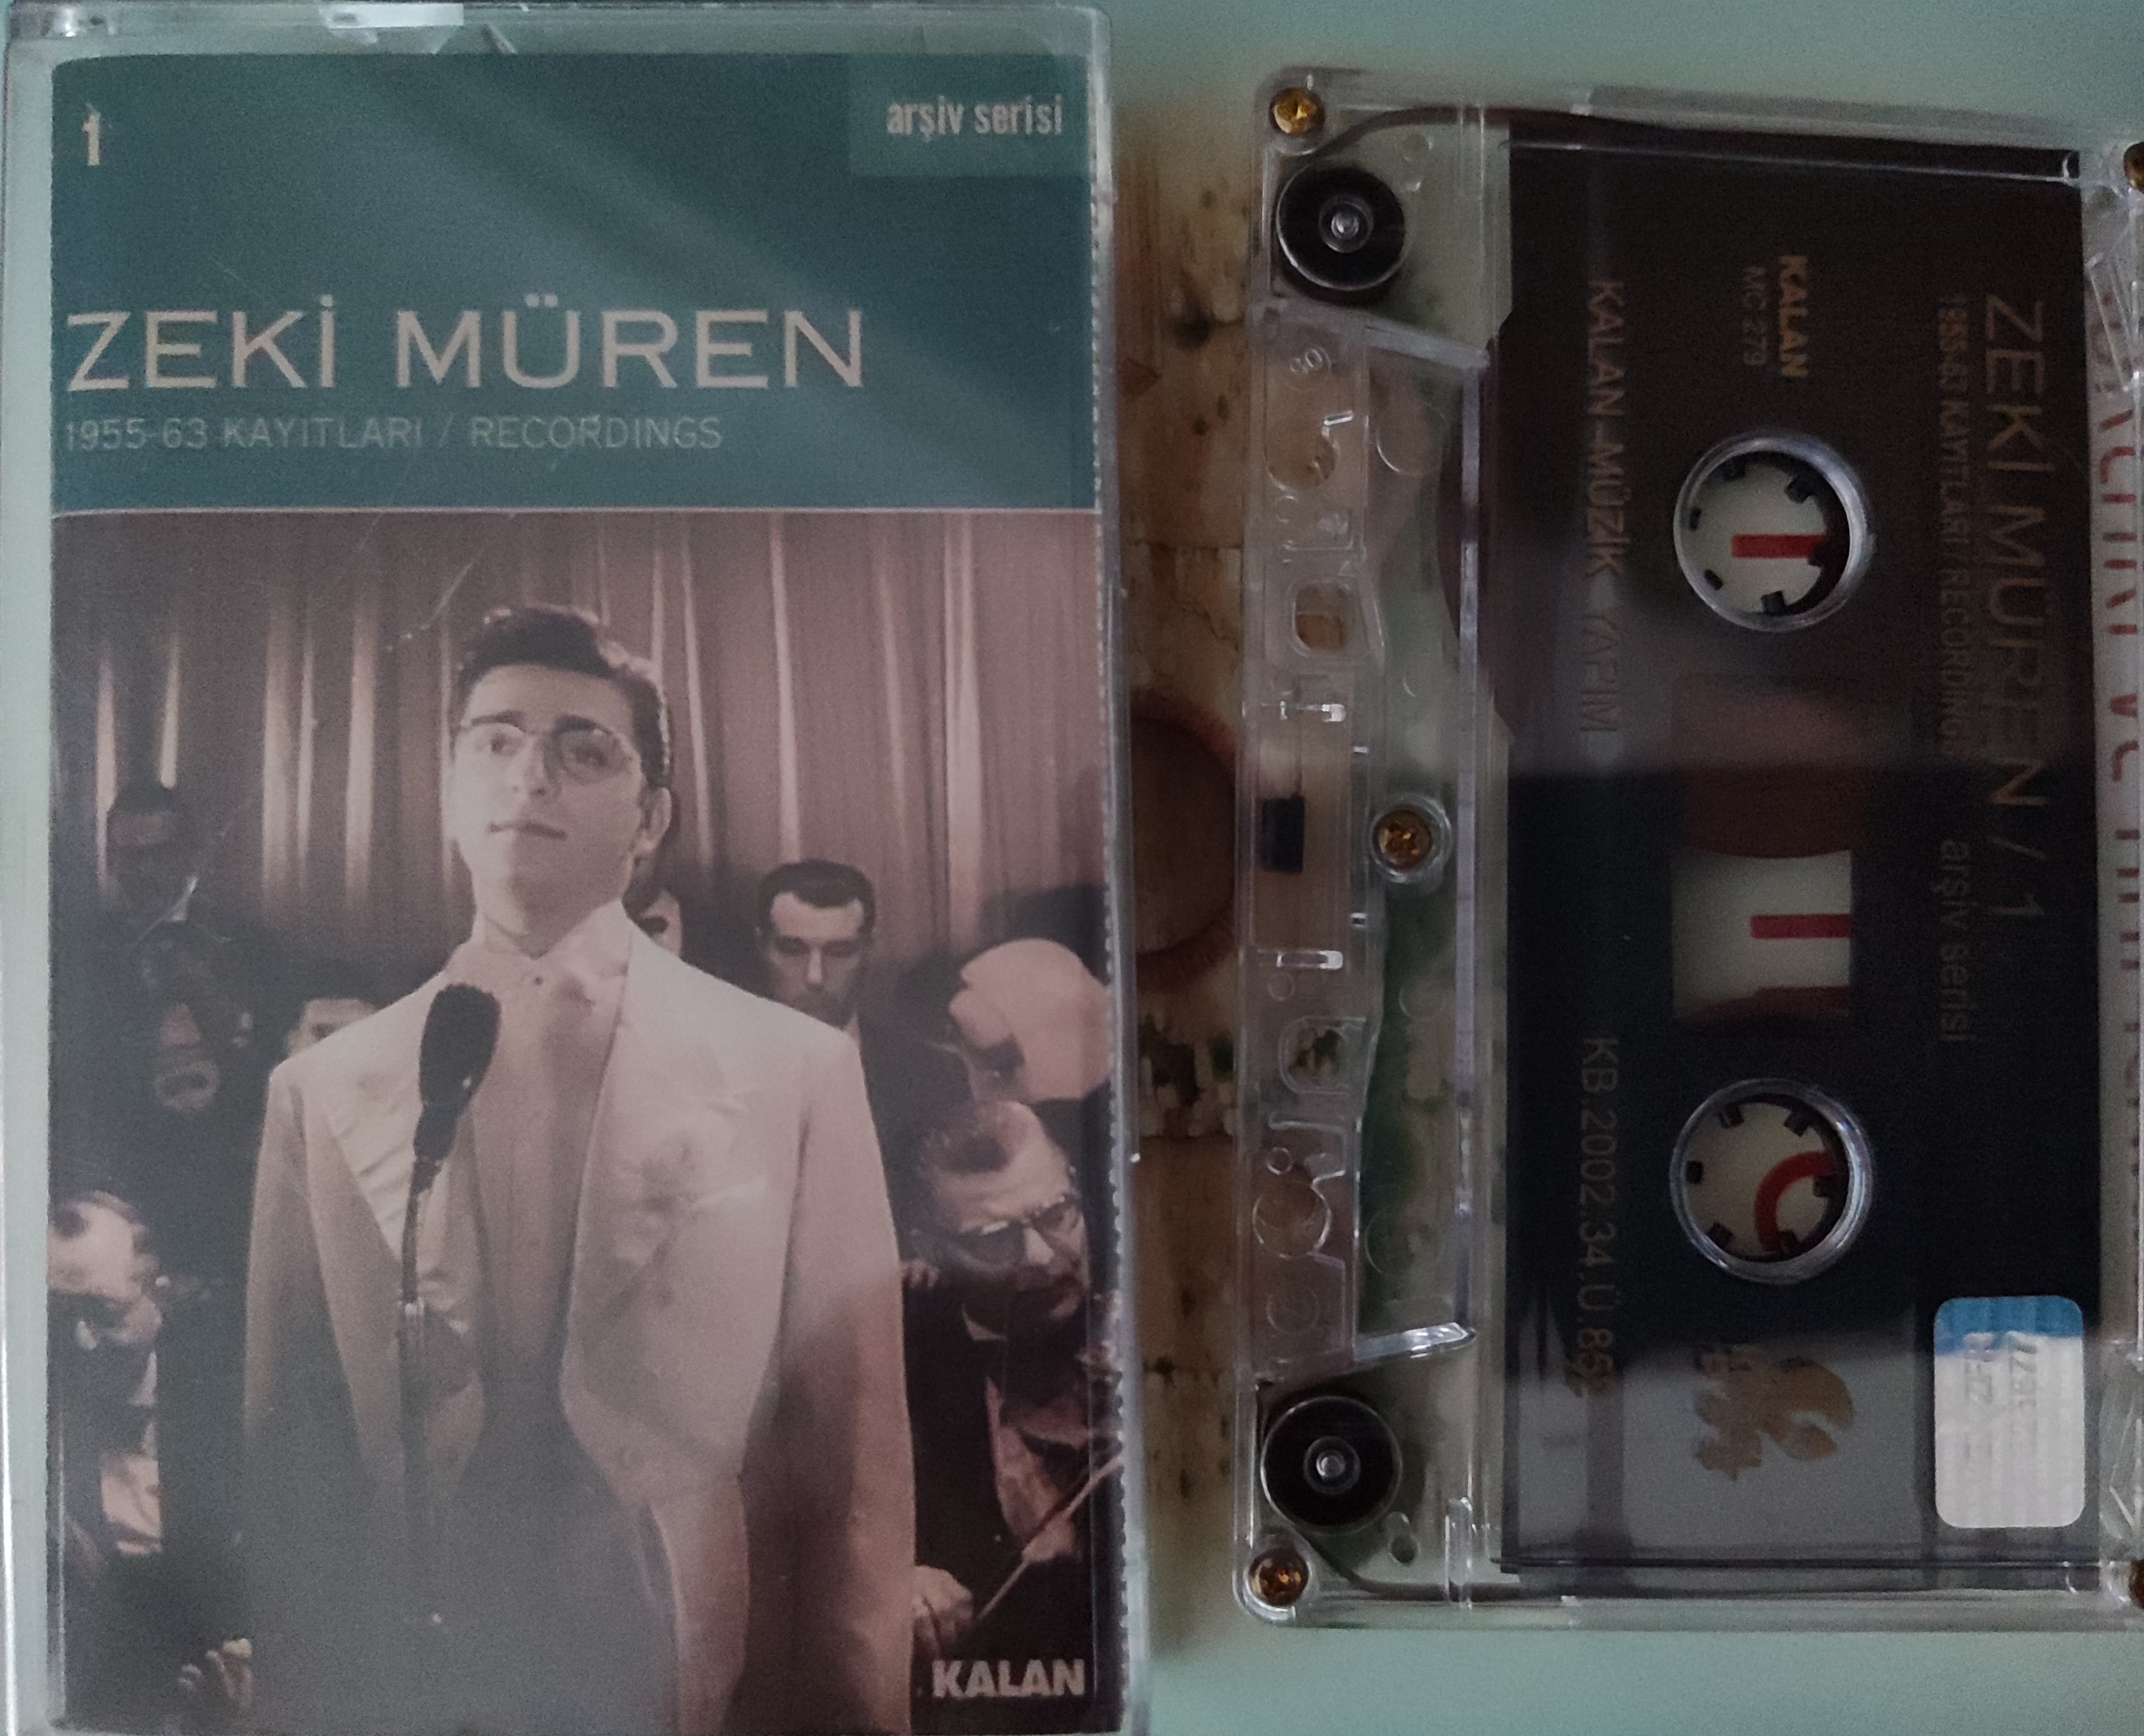 ZEKİ MÜREN - 1955- 63 Kayıtları / Recordings / Arşiv Serisi - 2002 Türkiye Basım Kaset Albüm 2. el